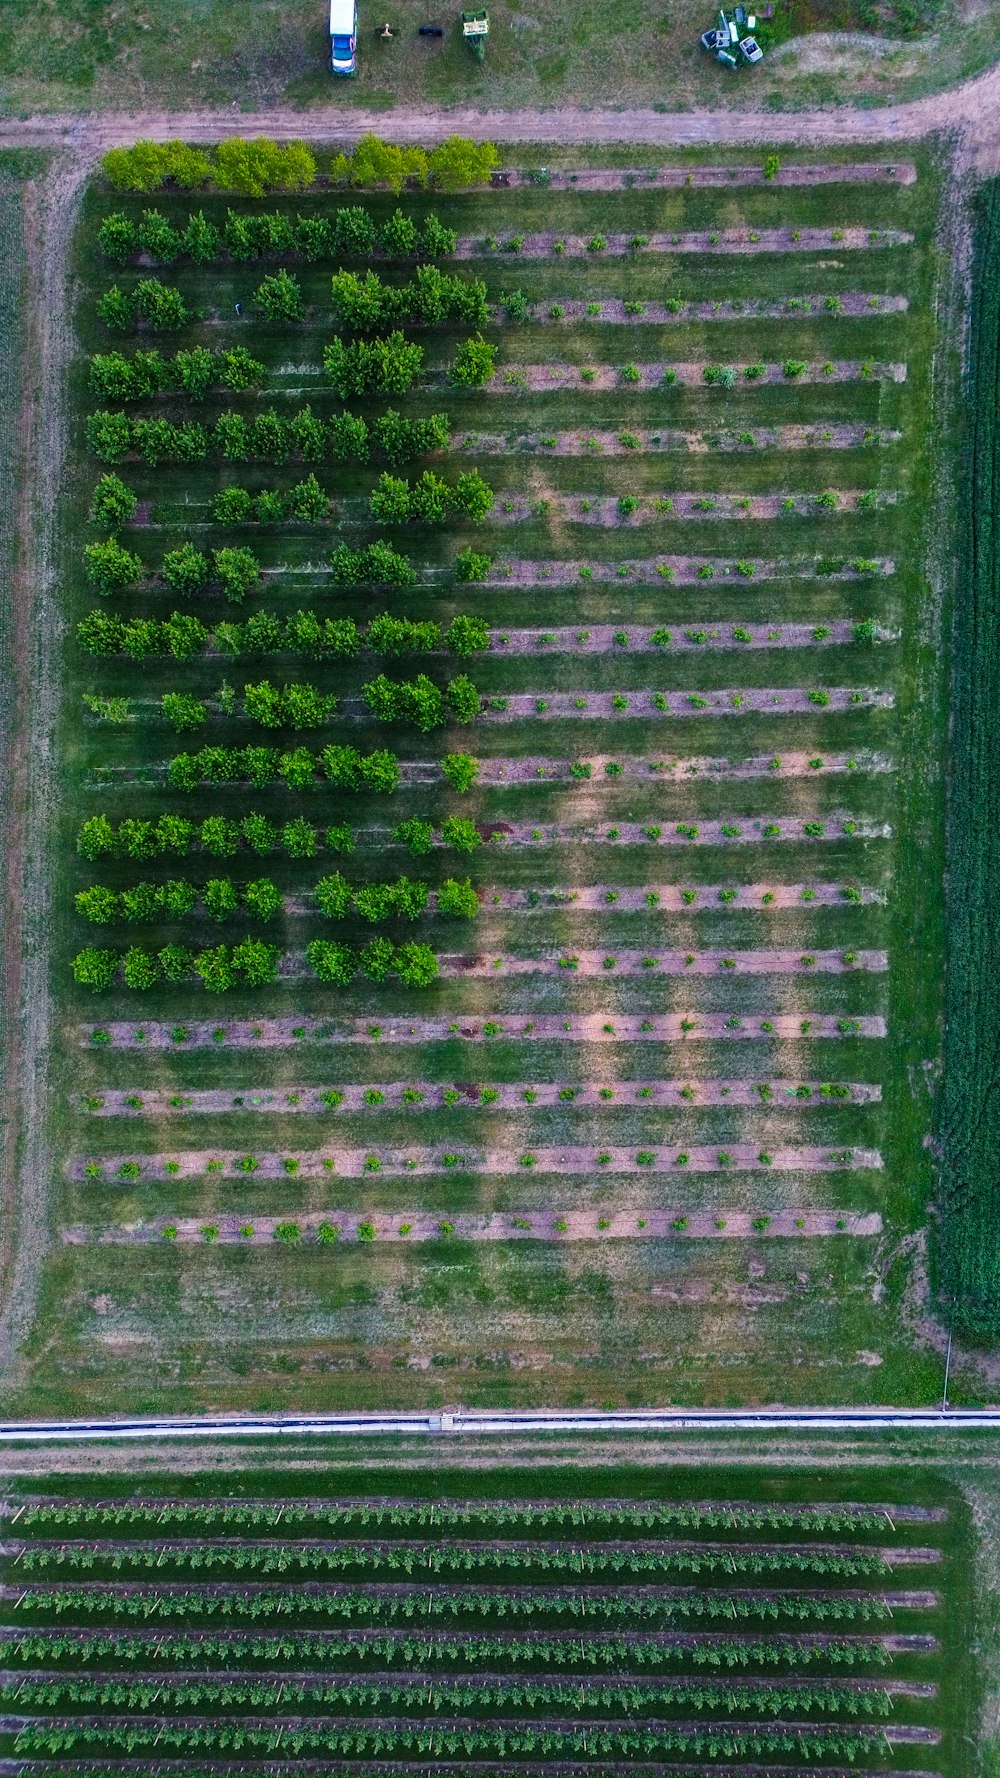 Una vista aérea de un campo de cultivos